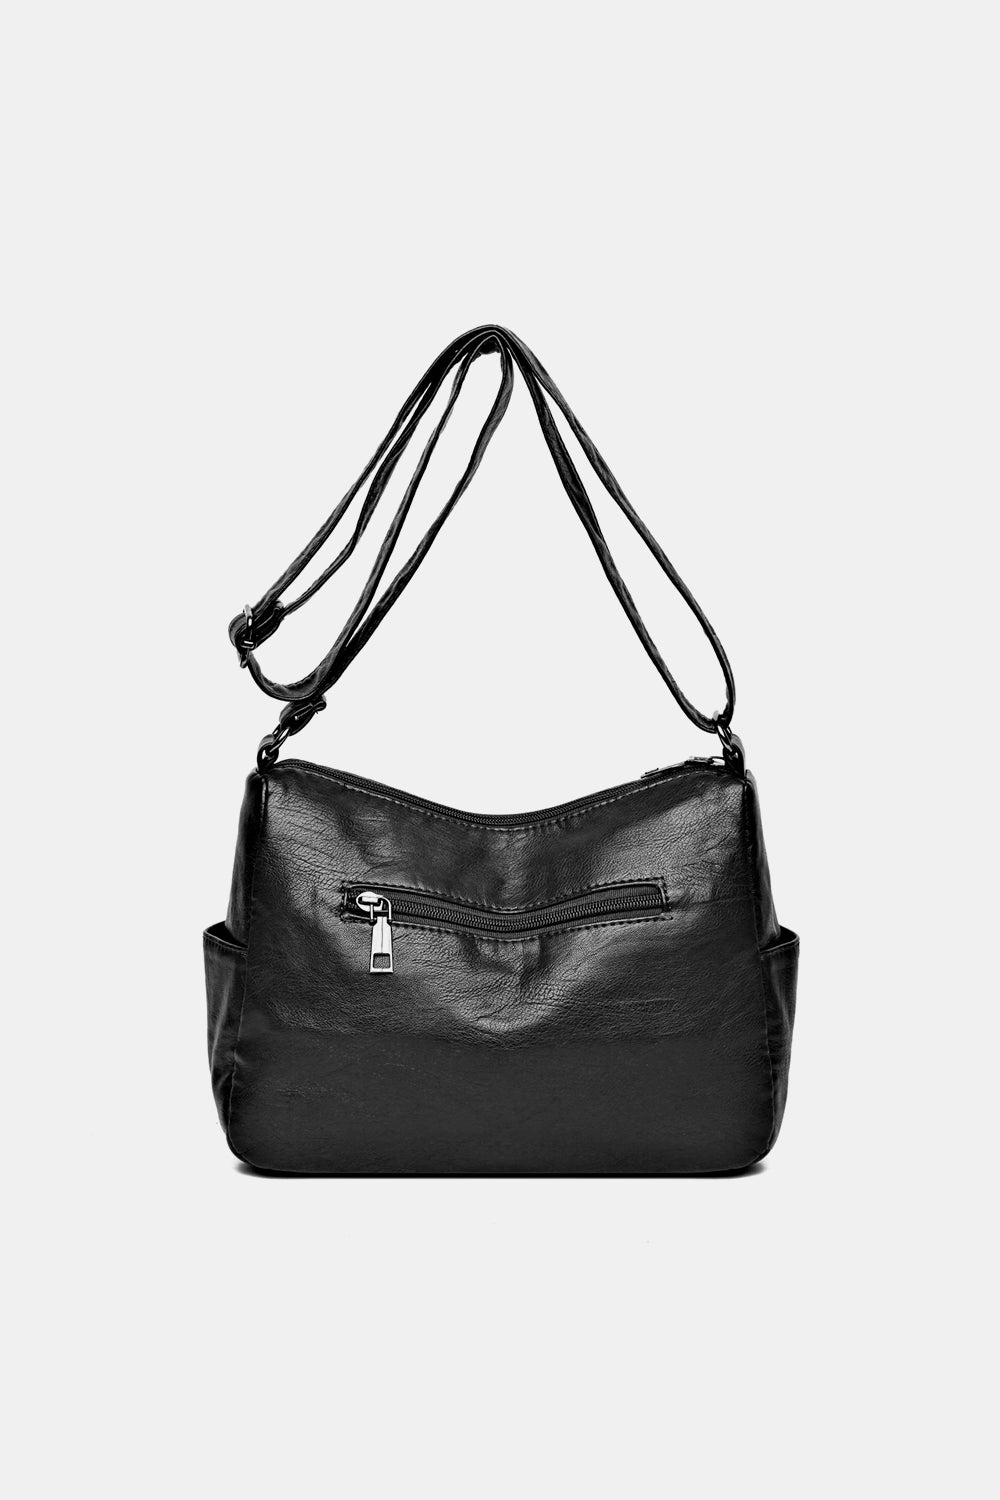 PU Leather Adjustable Strap Crossbody Bag - Thandynie